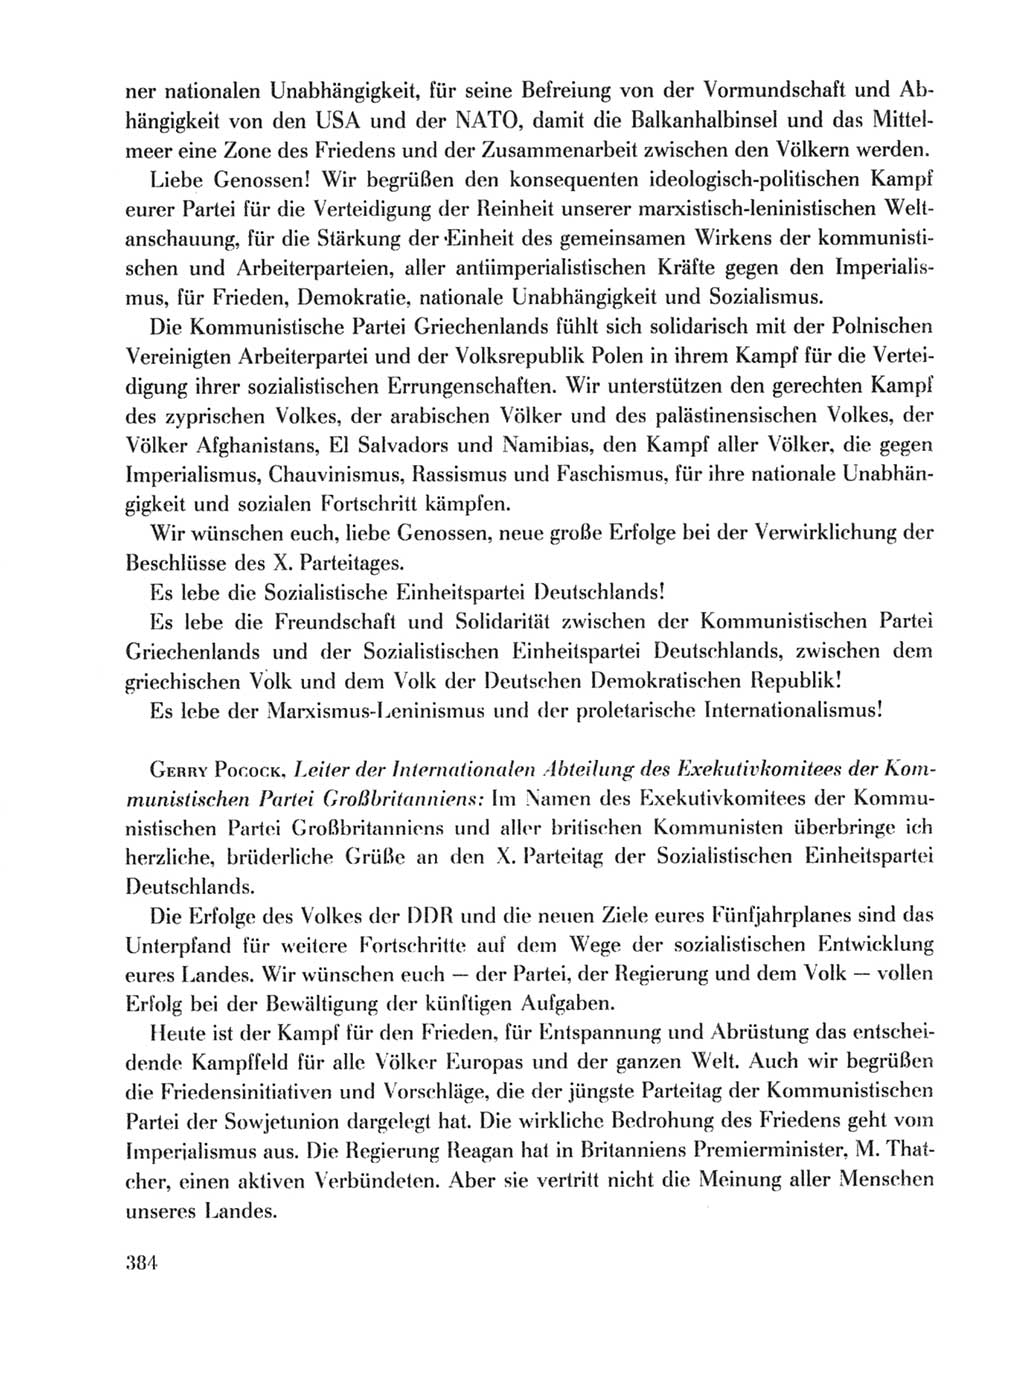 Protokoll der Verhandlungen des Ⅹ. Parteitages der Sozialistischen Einheitspartei Deutschlands (SED) [Deutsche Demokratische Republik (DDR)] 1981, Band 1, Seite 384 (Prot. Verh. Ⅹ. PT SED DDR 1981, Bd. 1, S. 384)